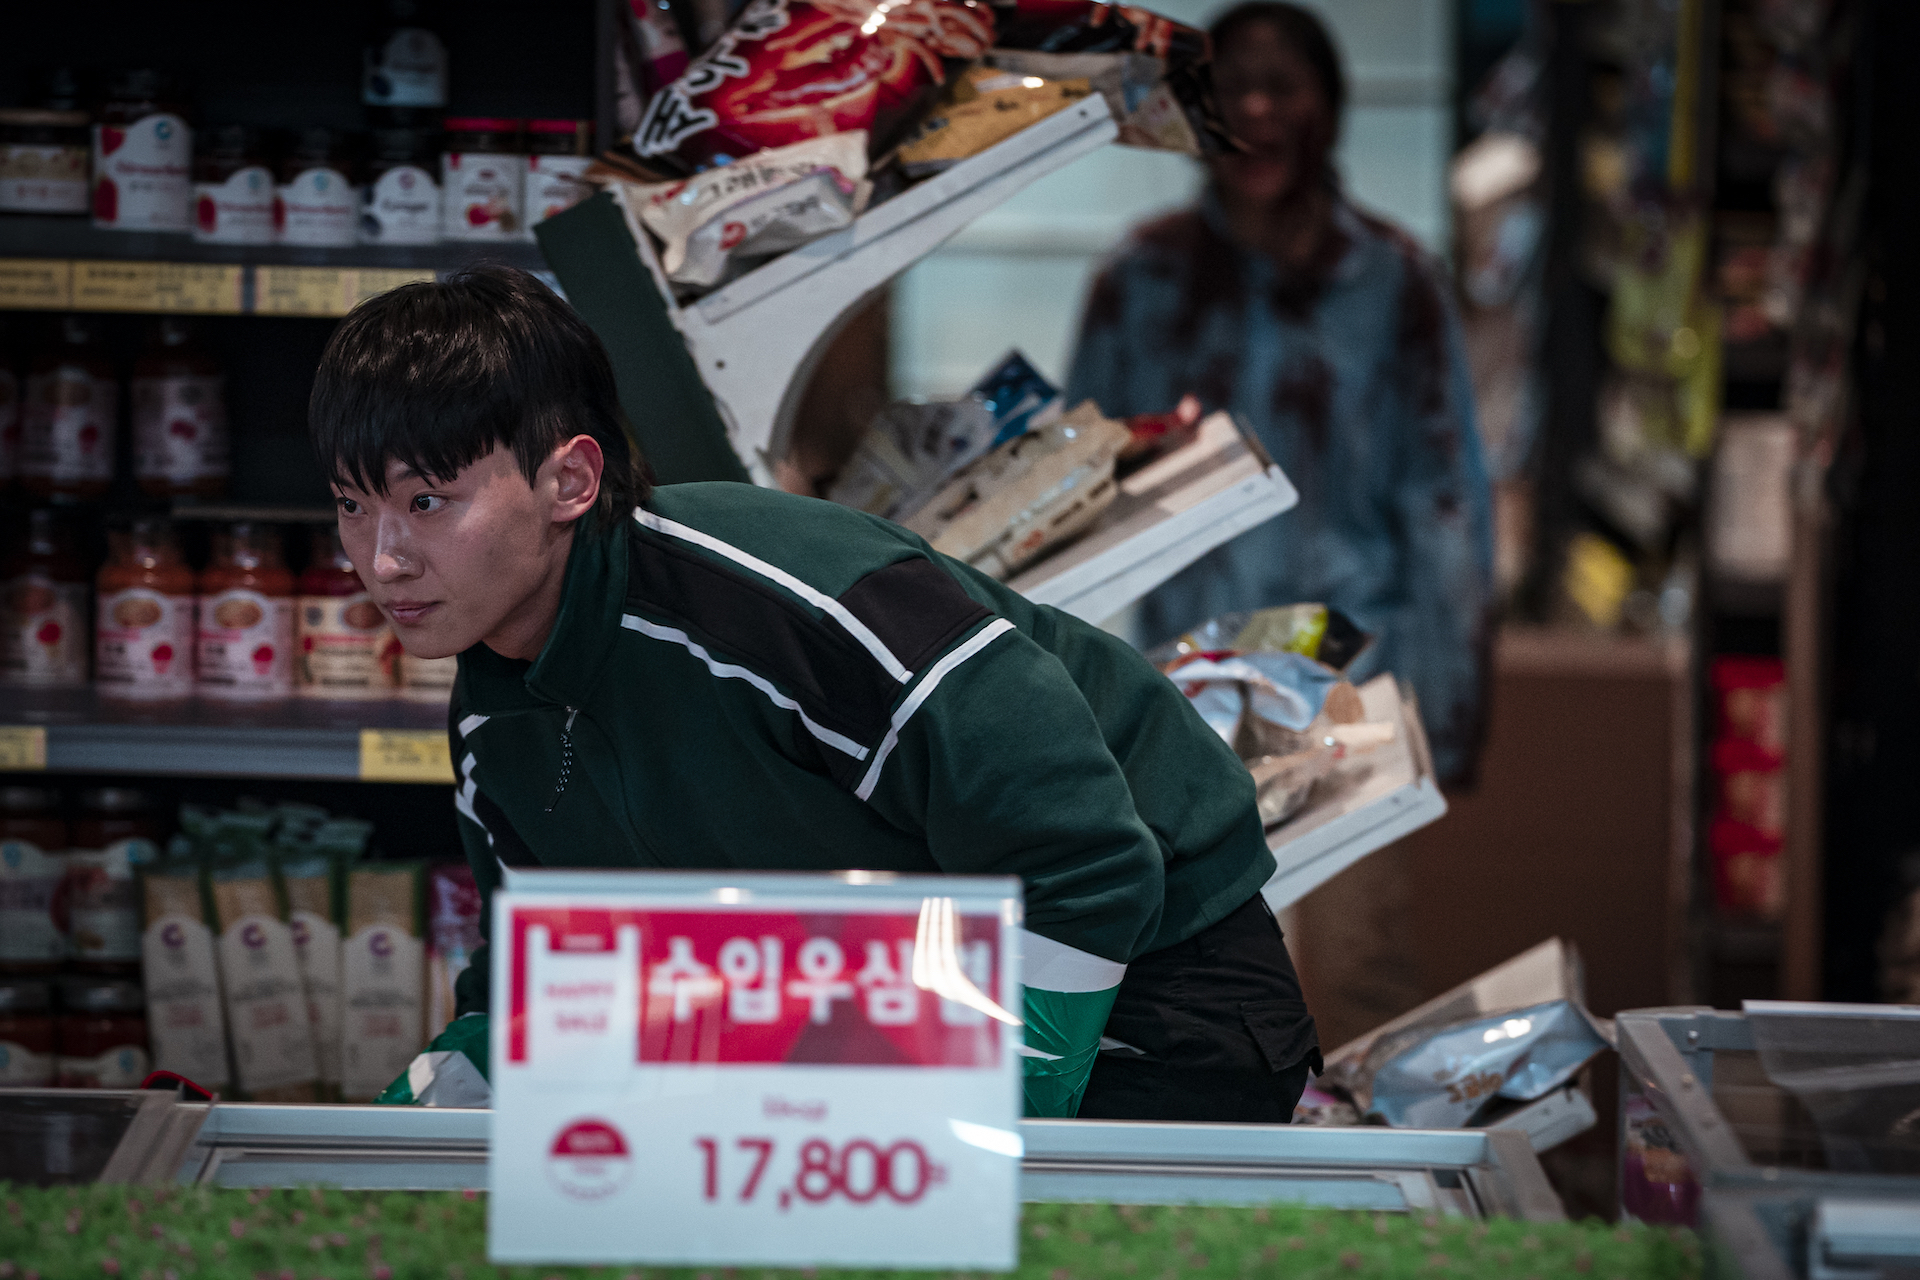 Da busca pelo amor ao combate de zumbis, a Netflix diverte o mundo com  reality shows coreanos - About Netflix